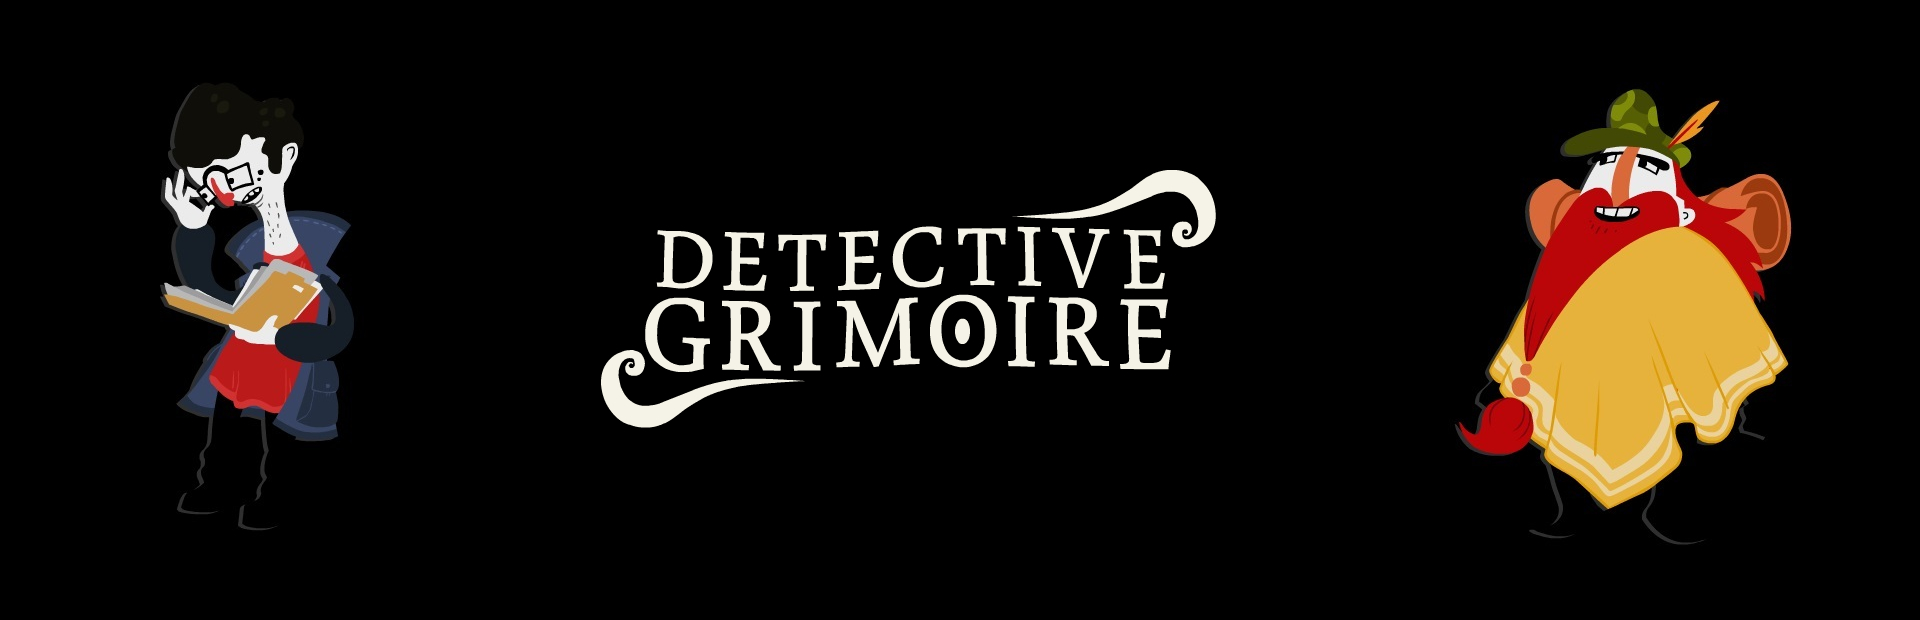 دانلود بازی Detective Grimoire برای پی سی | گیمباتو